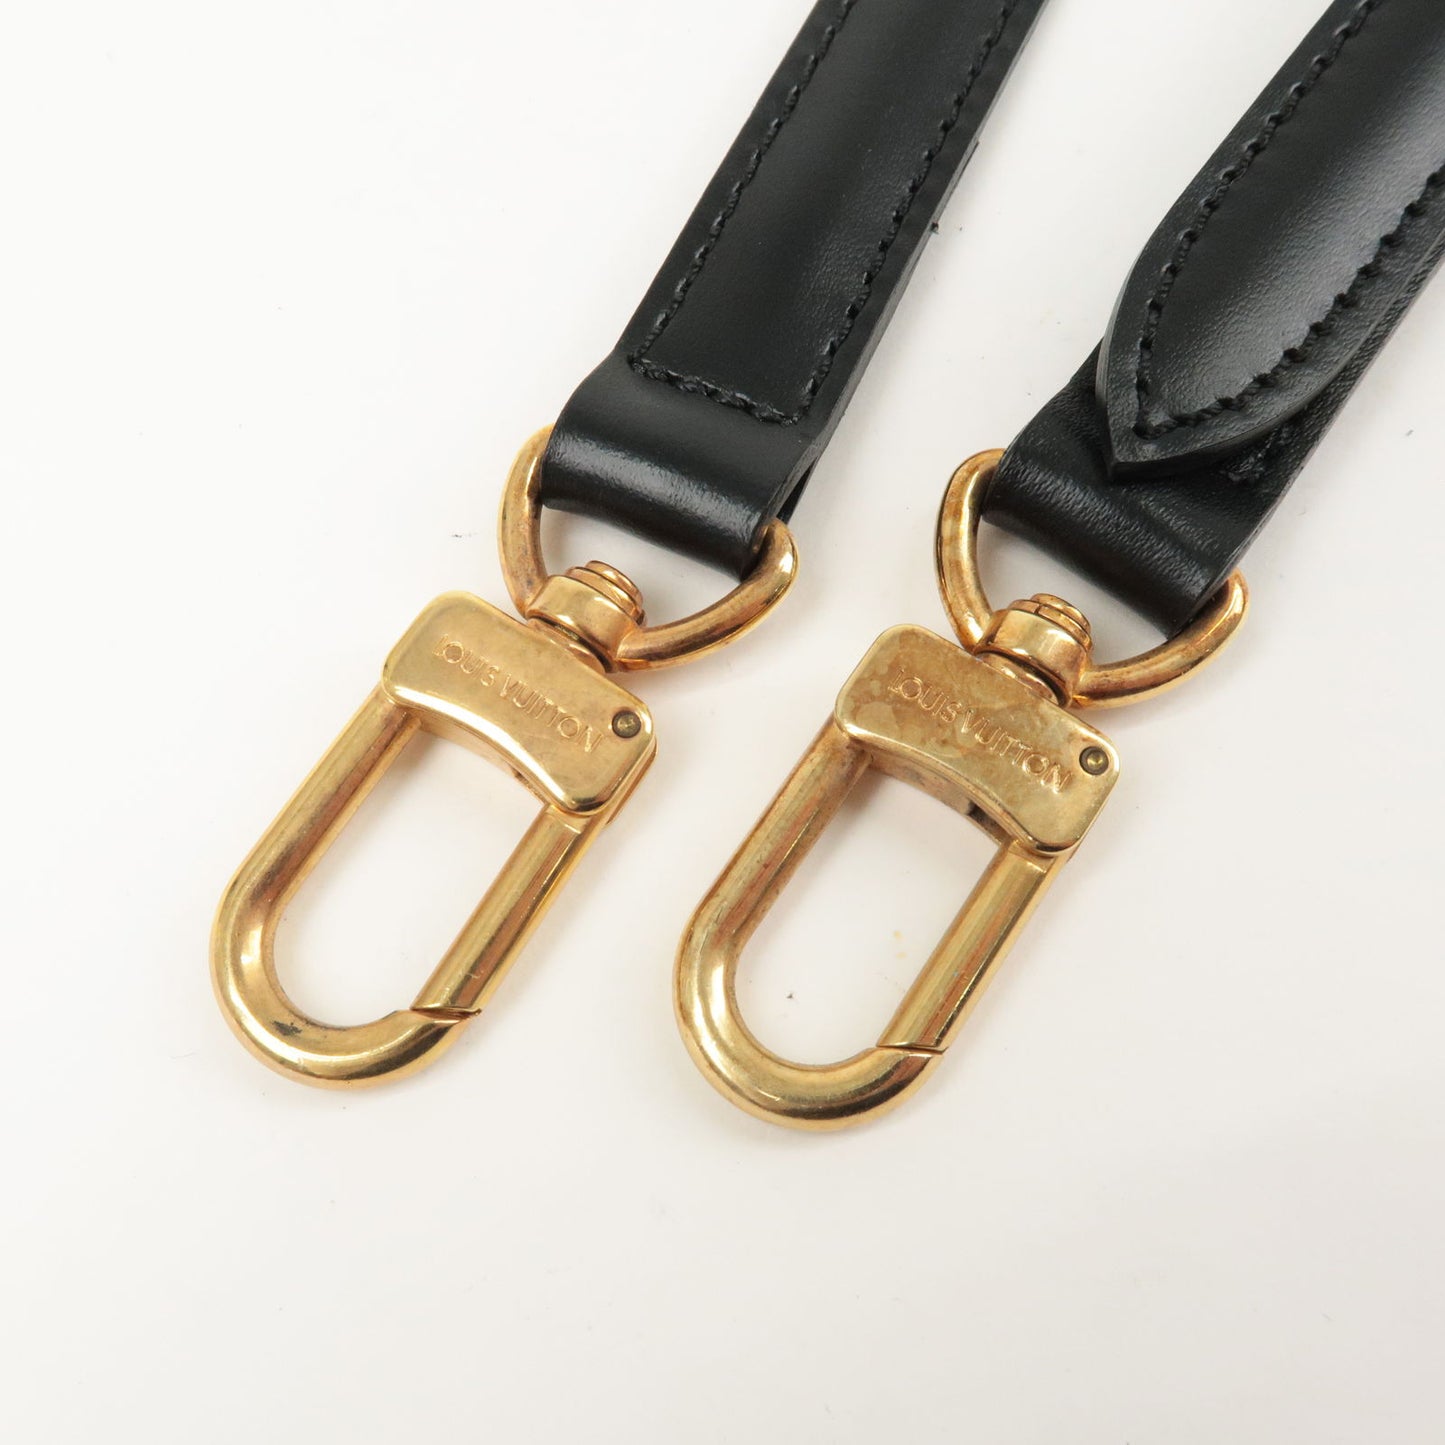 Louis Vuitton Epi Leather Adjustable Shoulder Strap Noir 120cm